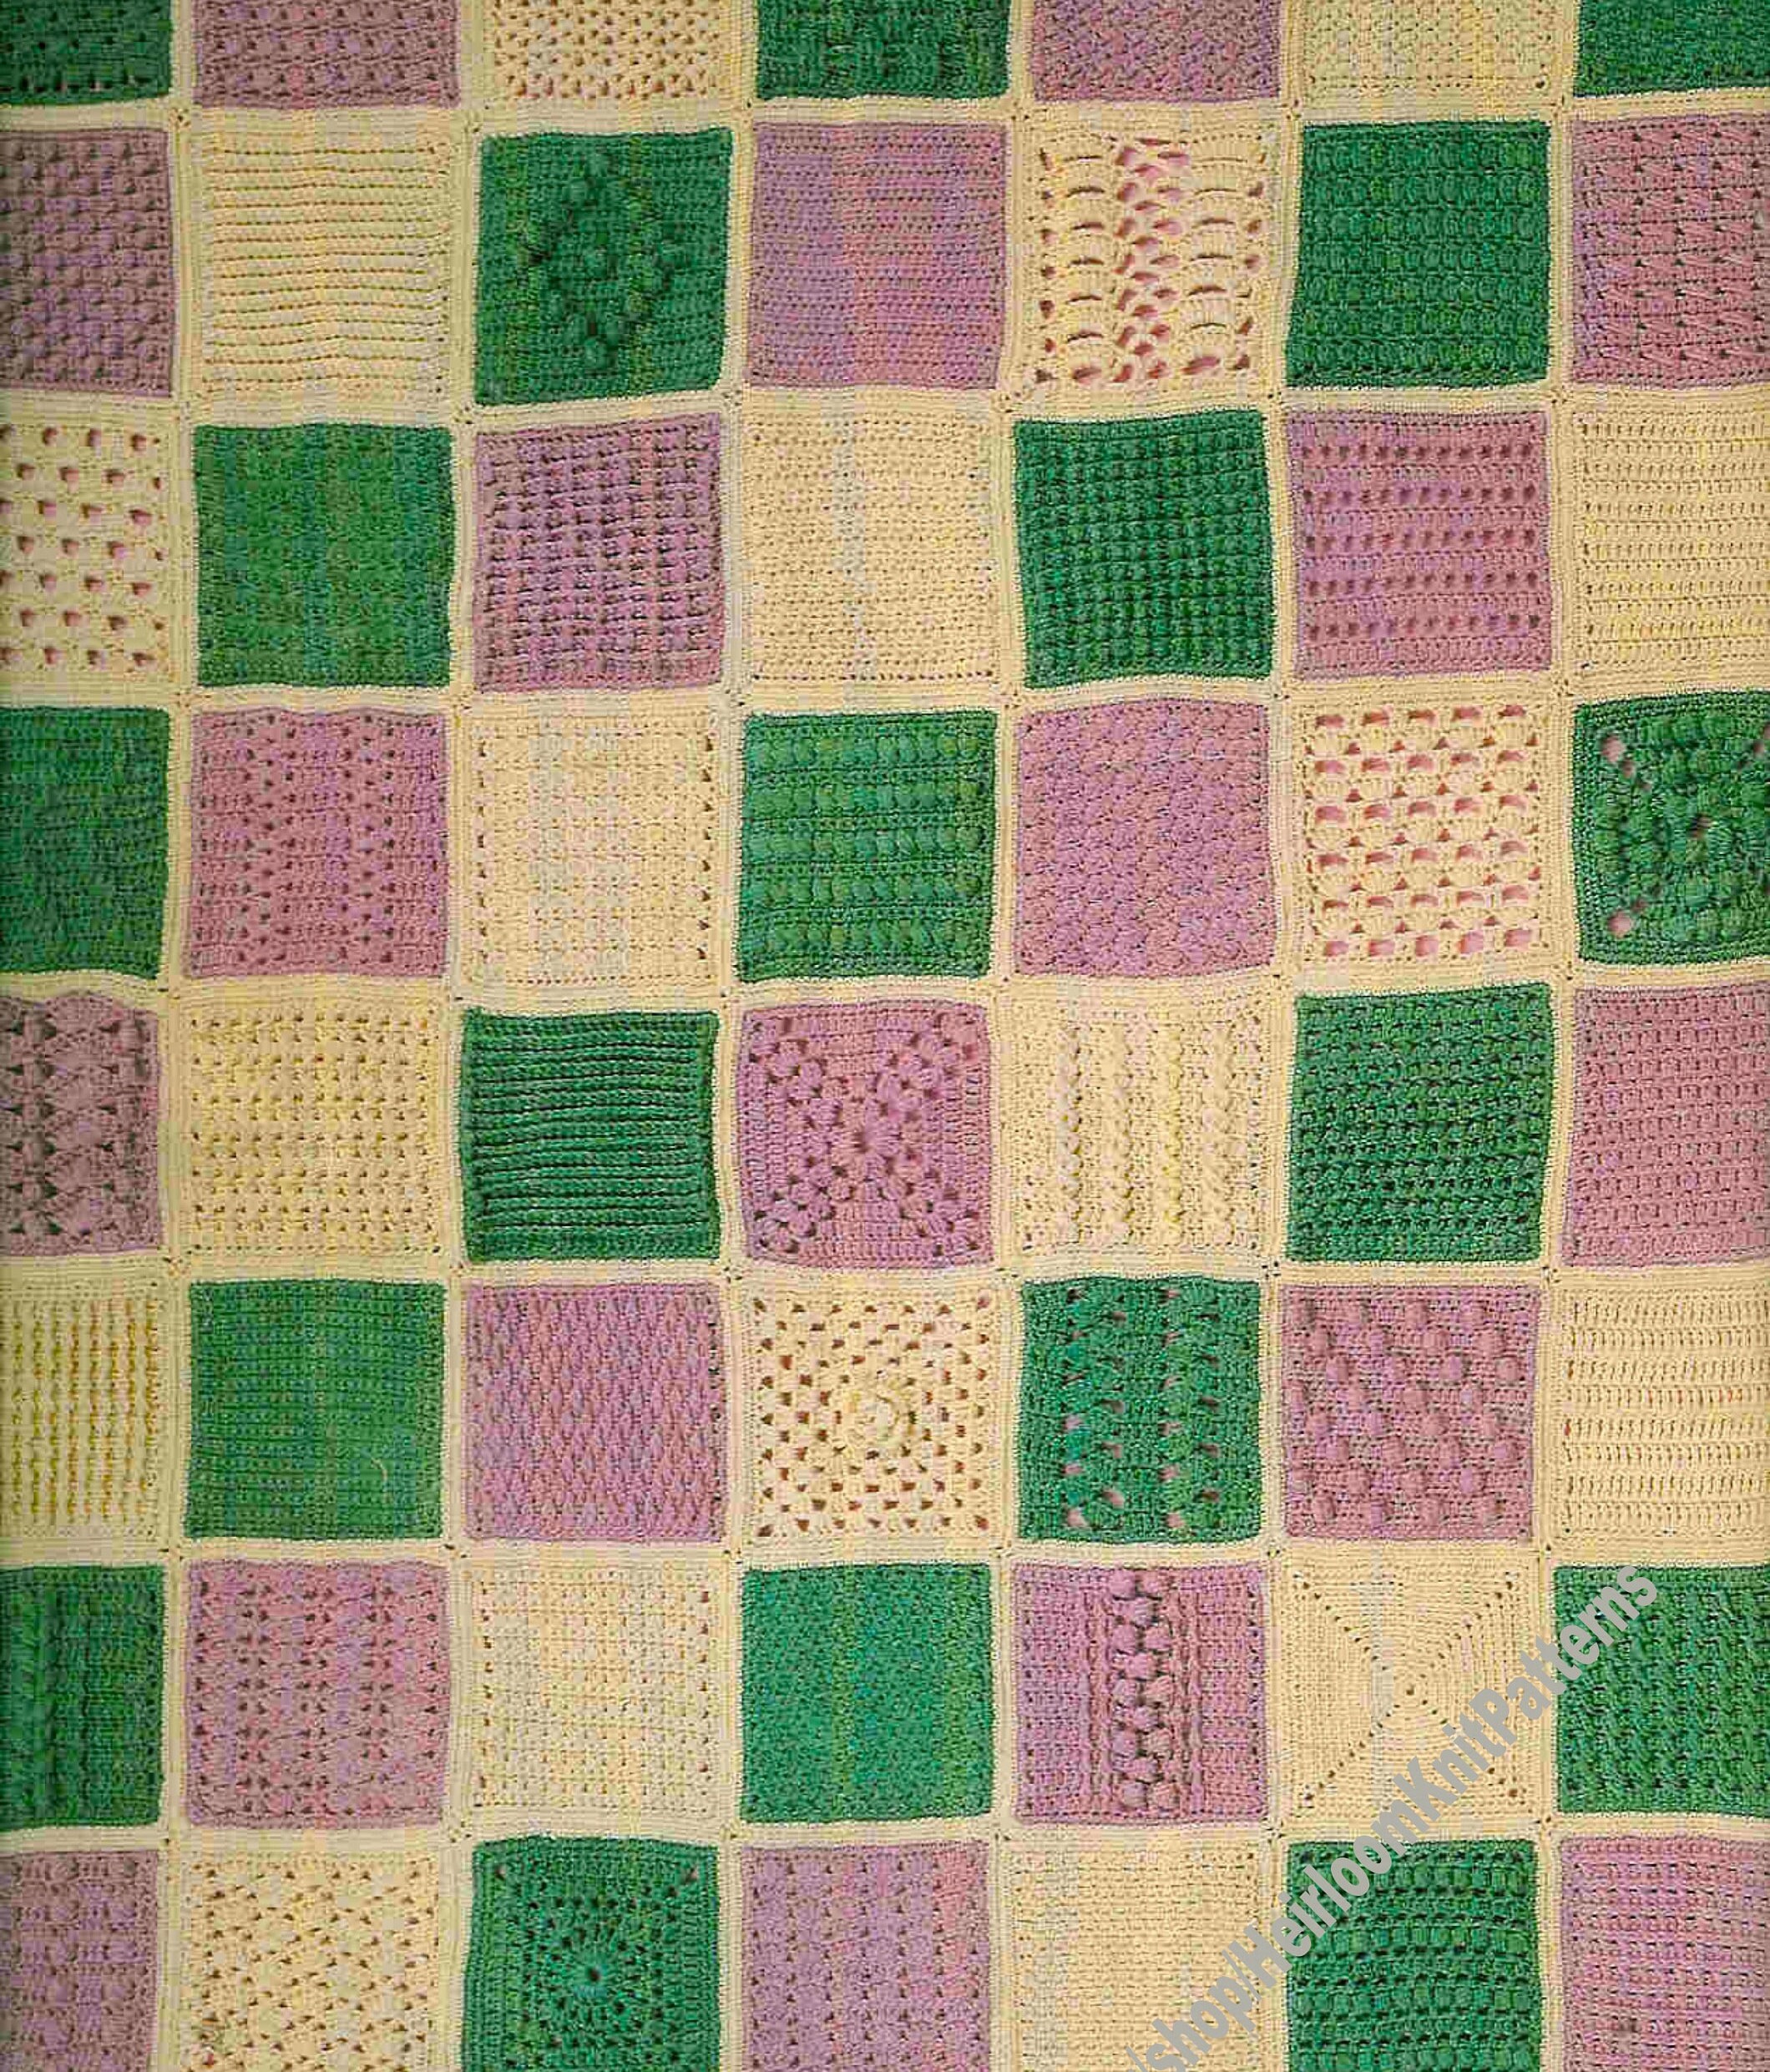 American School Needlework Afghan Elegance 5 Crochet Patterns #1129